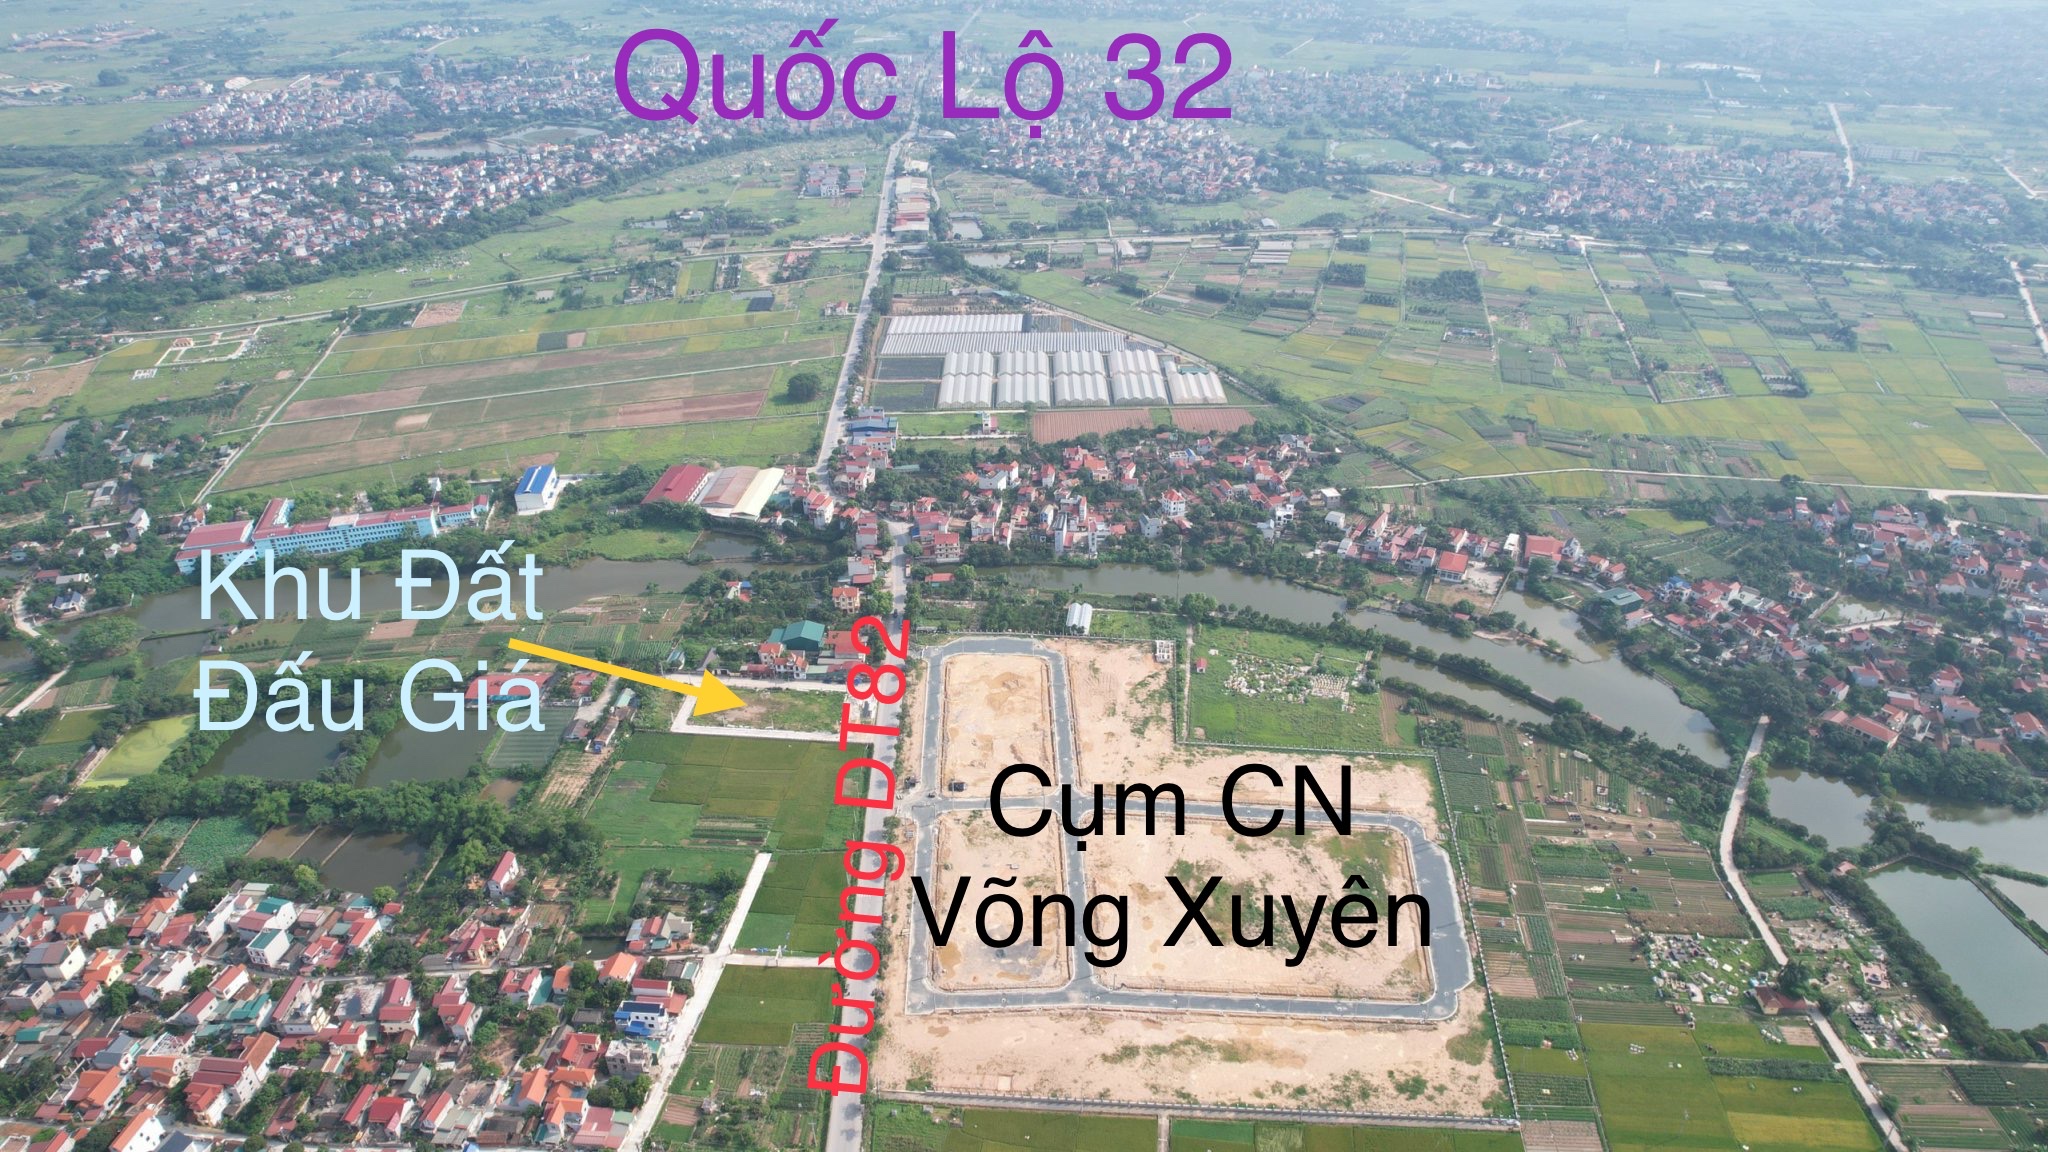 DG01 khu X1 thôn Lục Xuân xã Võng Xuyên huyện Phúc Thọ thành phố Hà Nội.